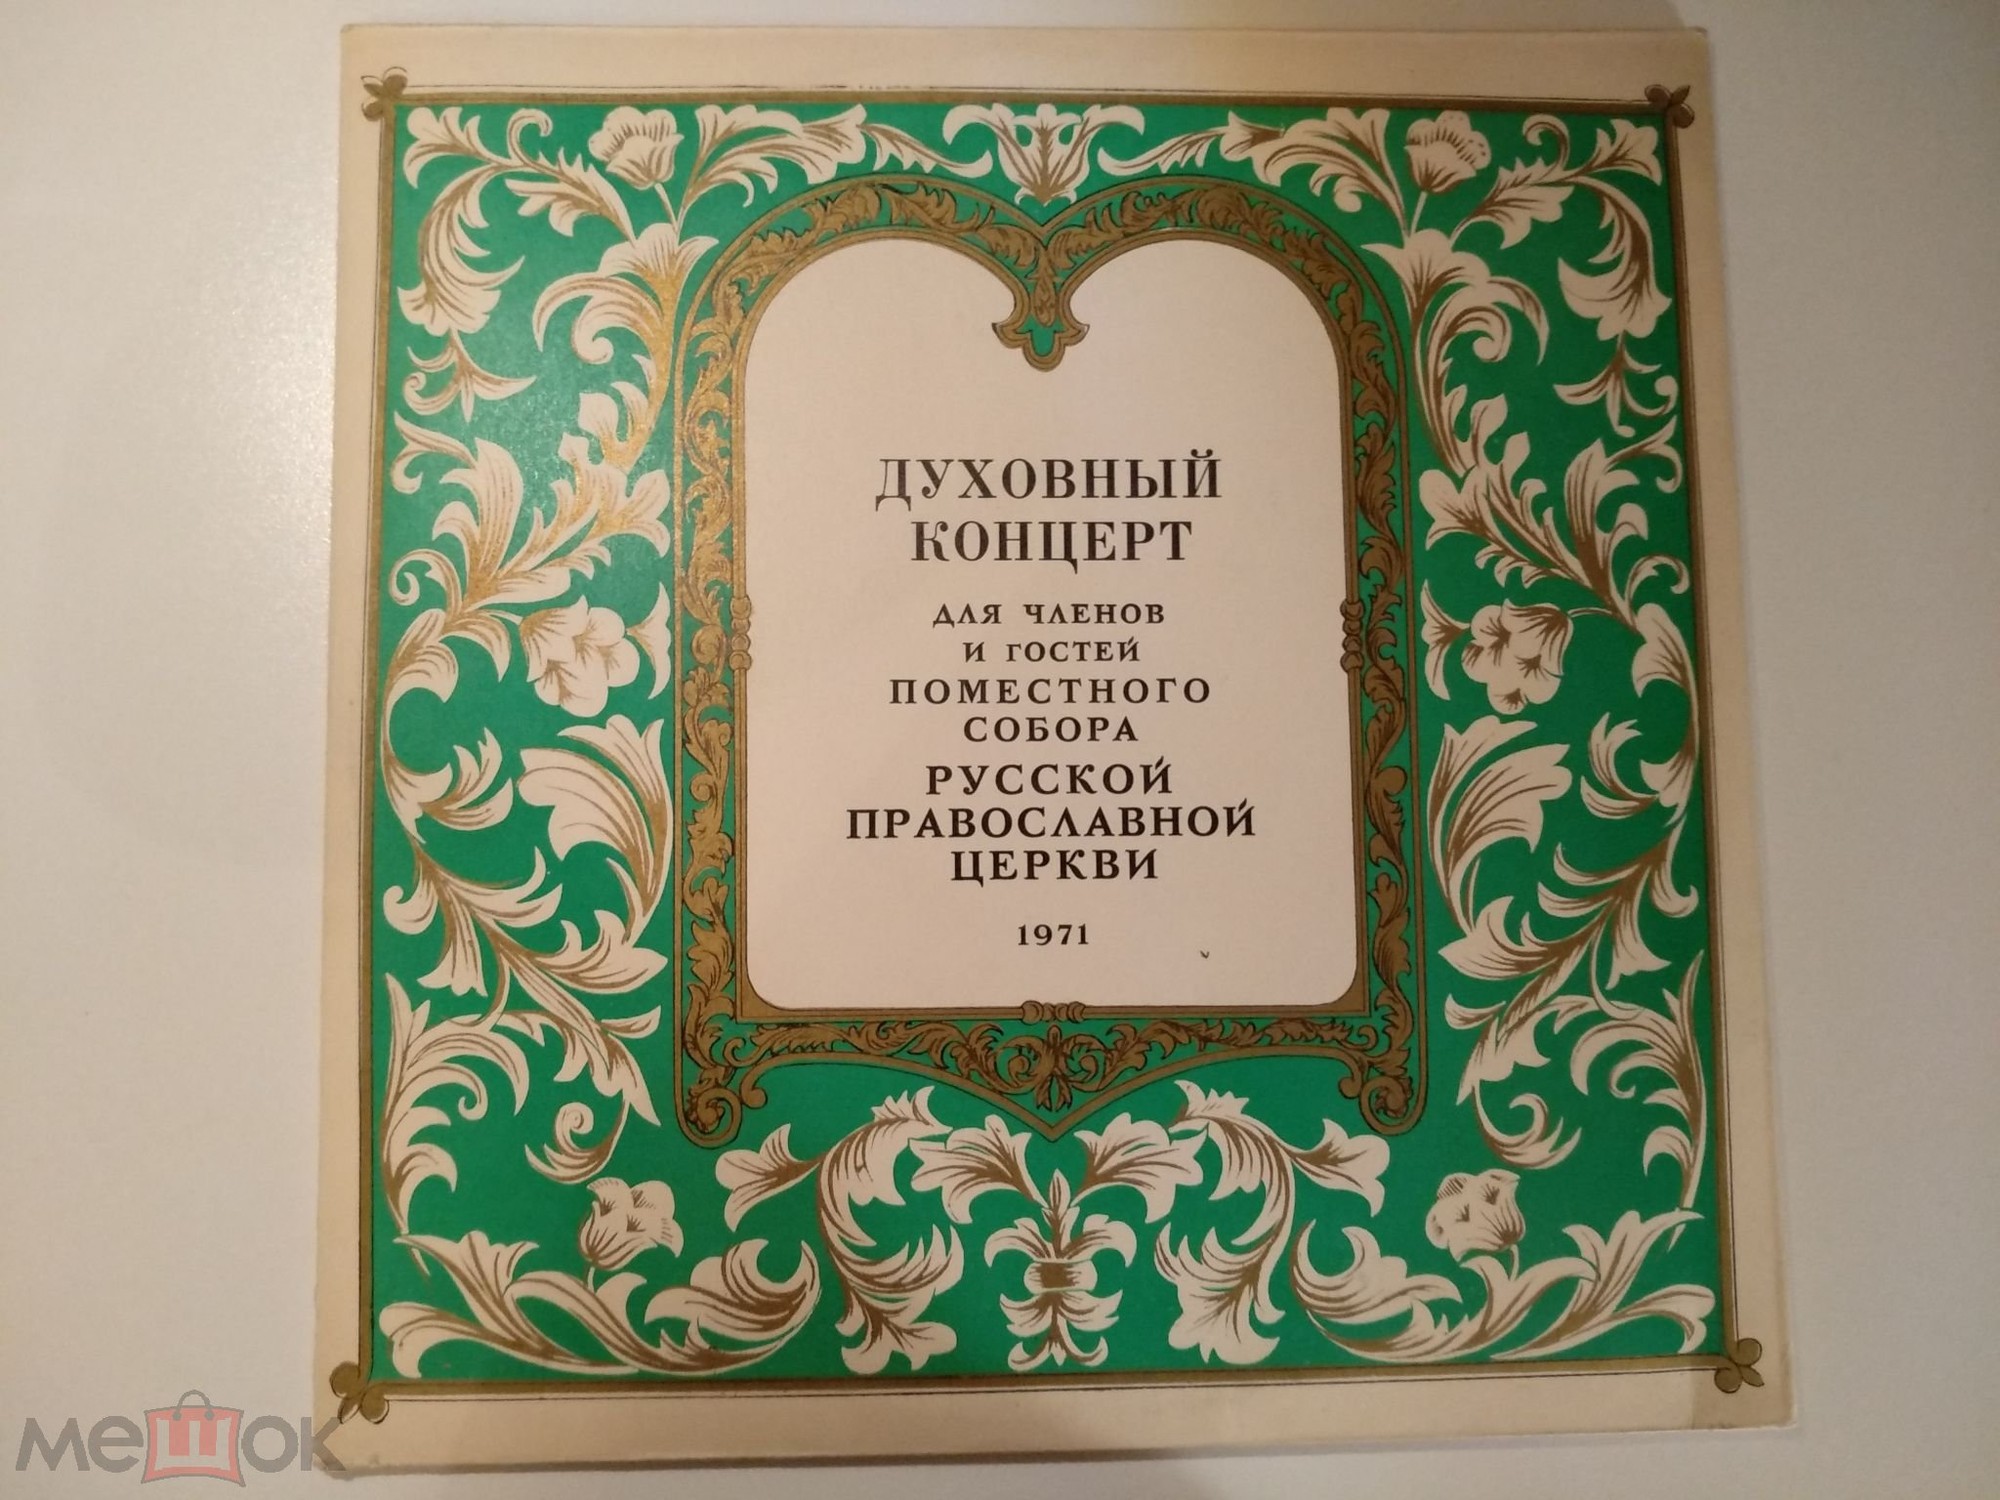 Духовный концерт для членов и гостей поместного собора Русской православной церкви, 1971